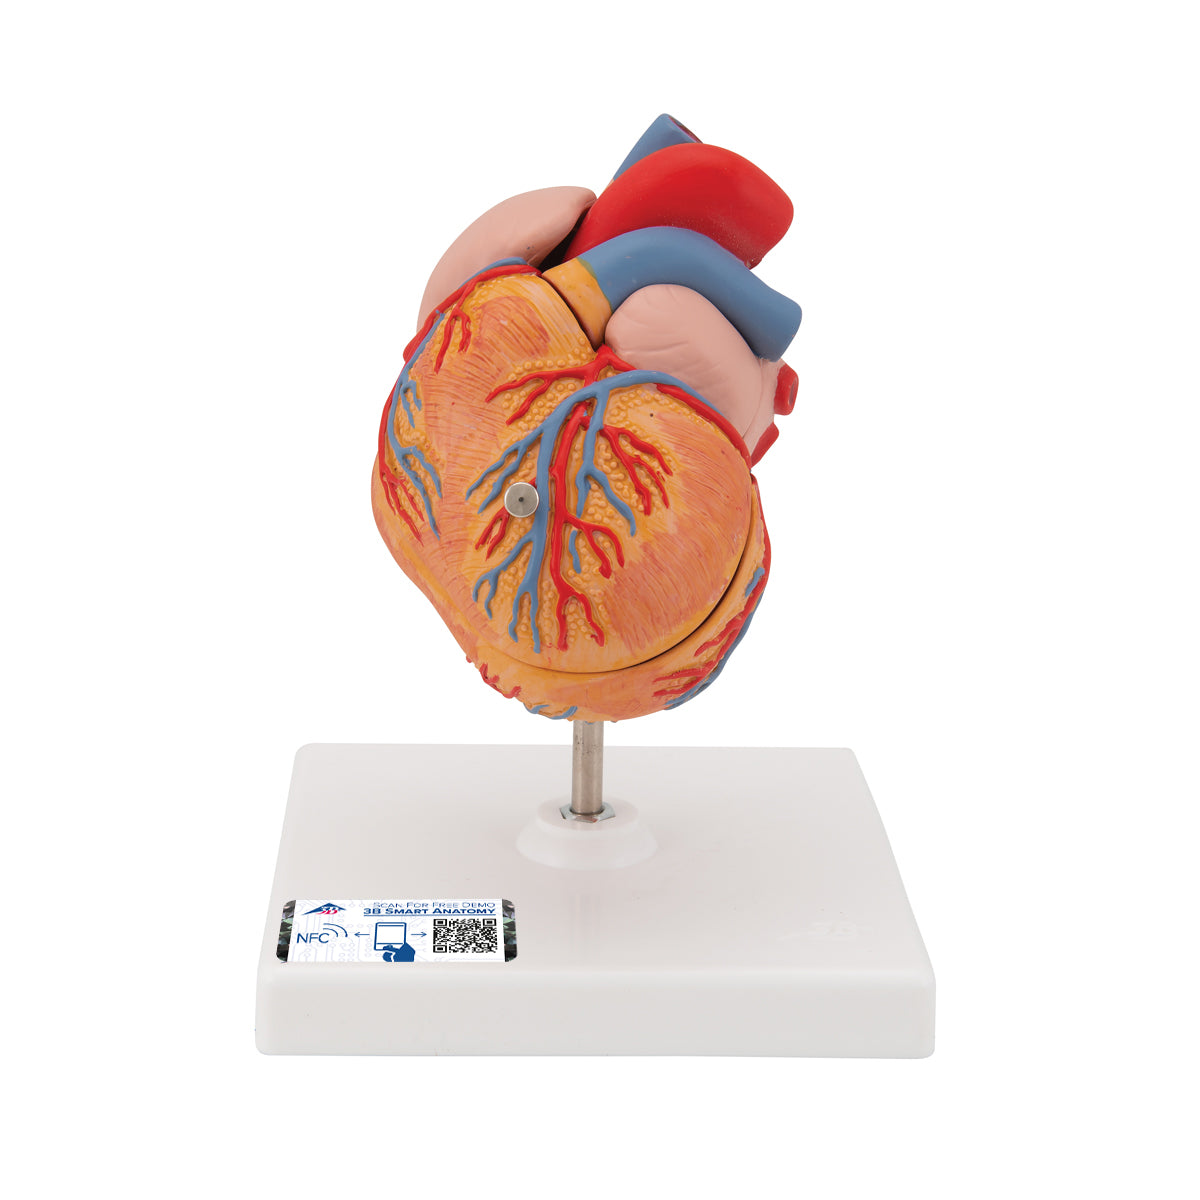 Minskad hjärtmodell med vänsterkammarhypertrofi och stam